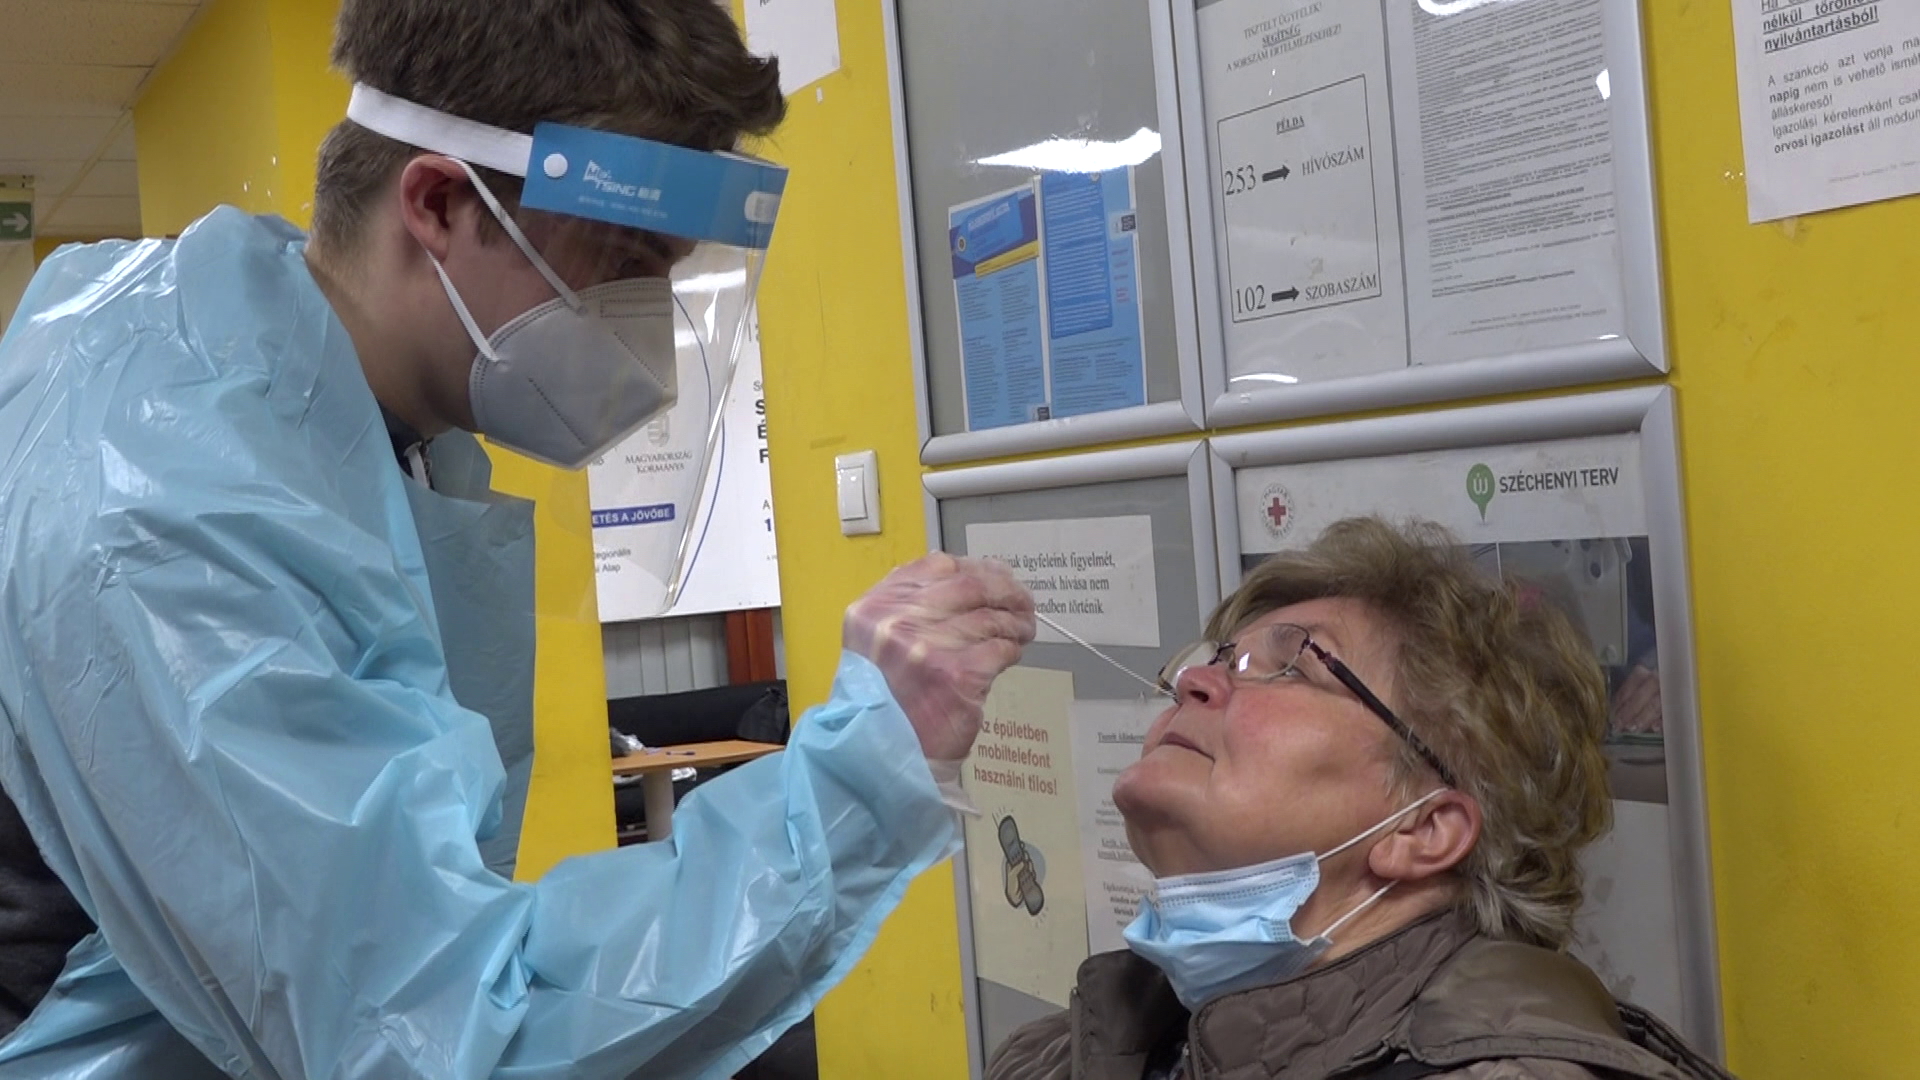 Szlávik János: Súlyos influenza szezonra számíthatunk